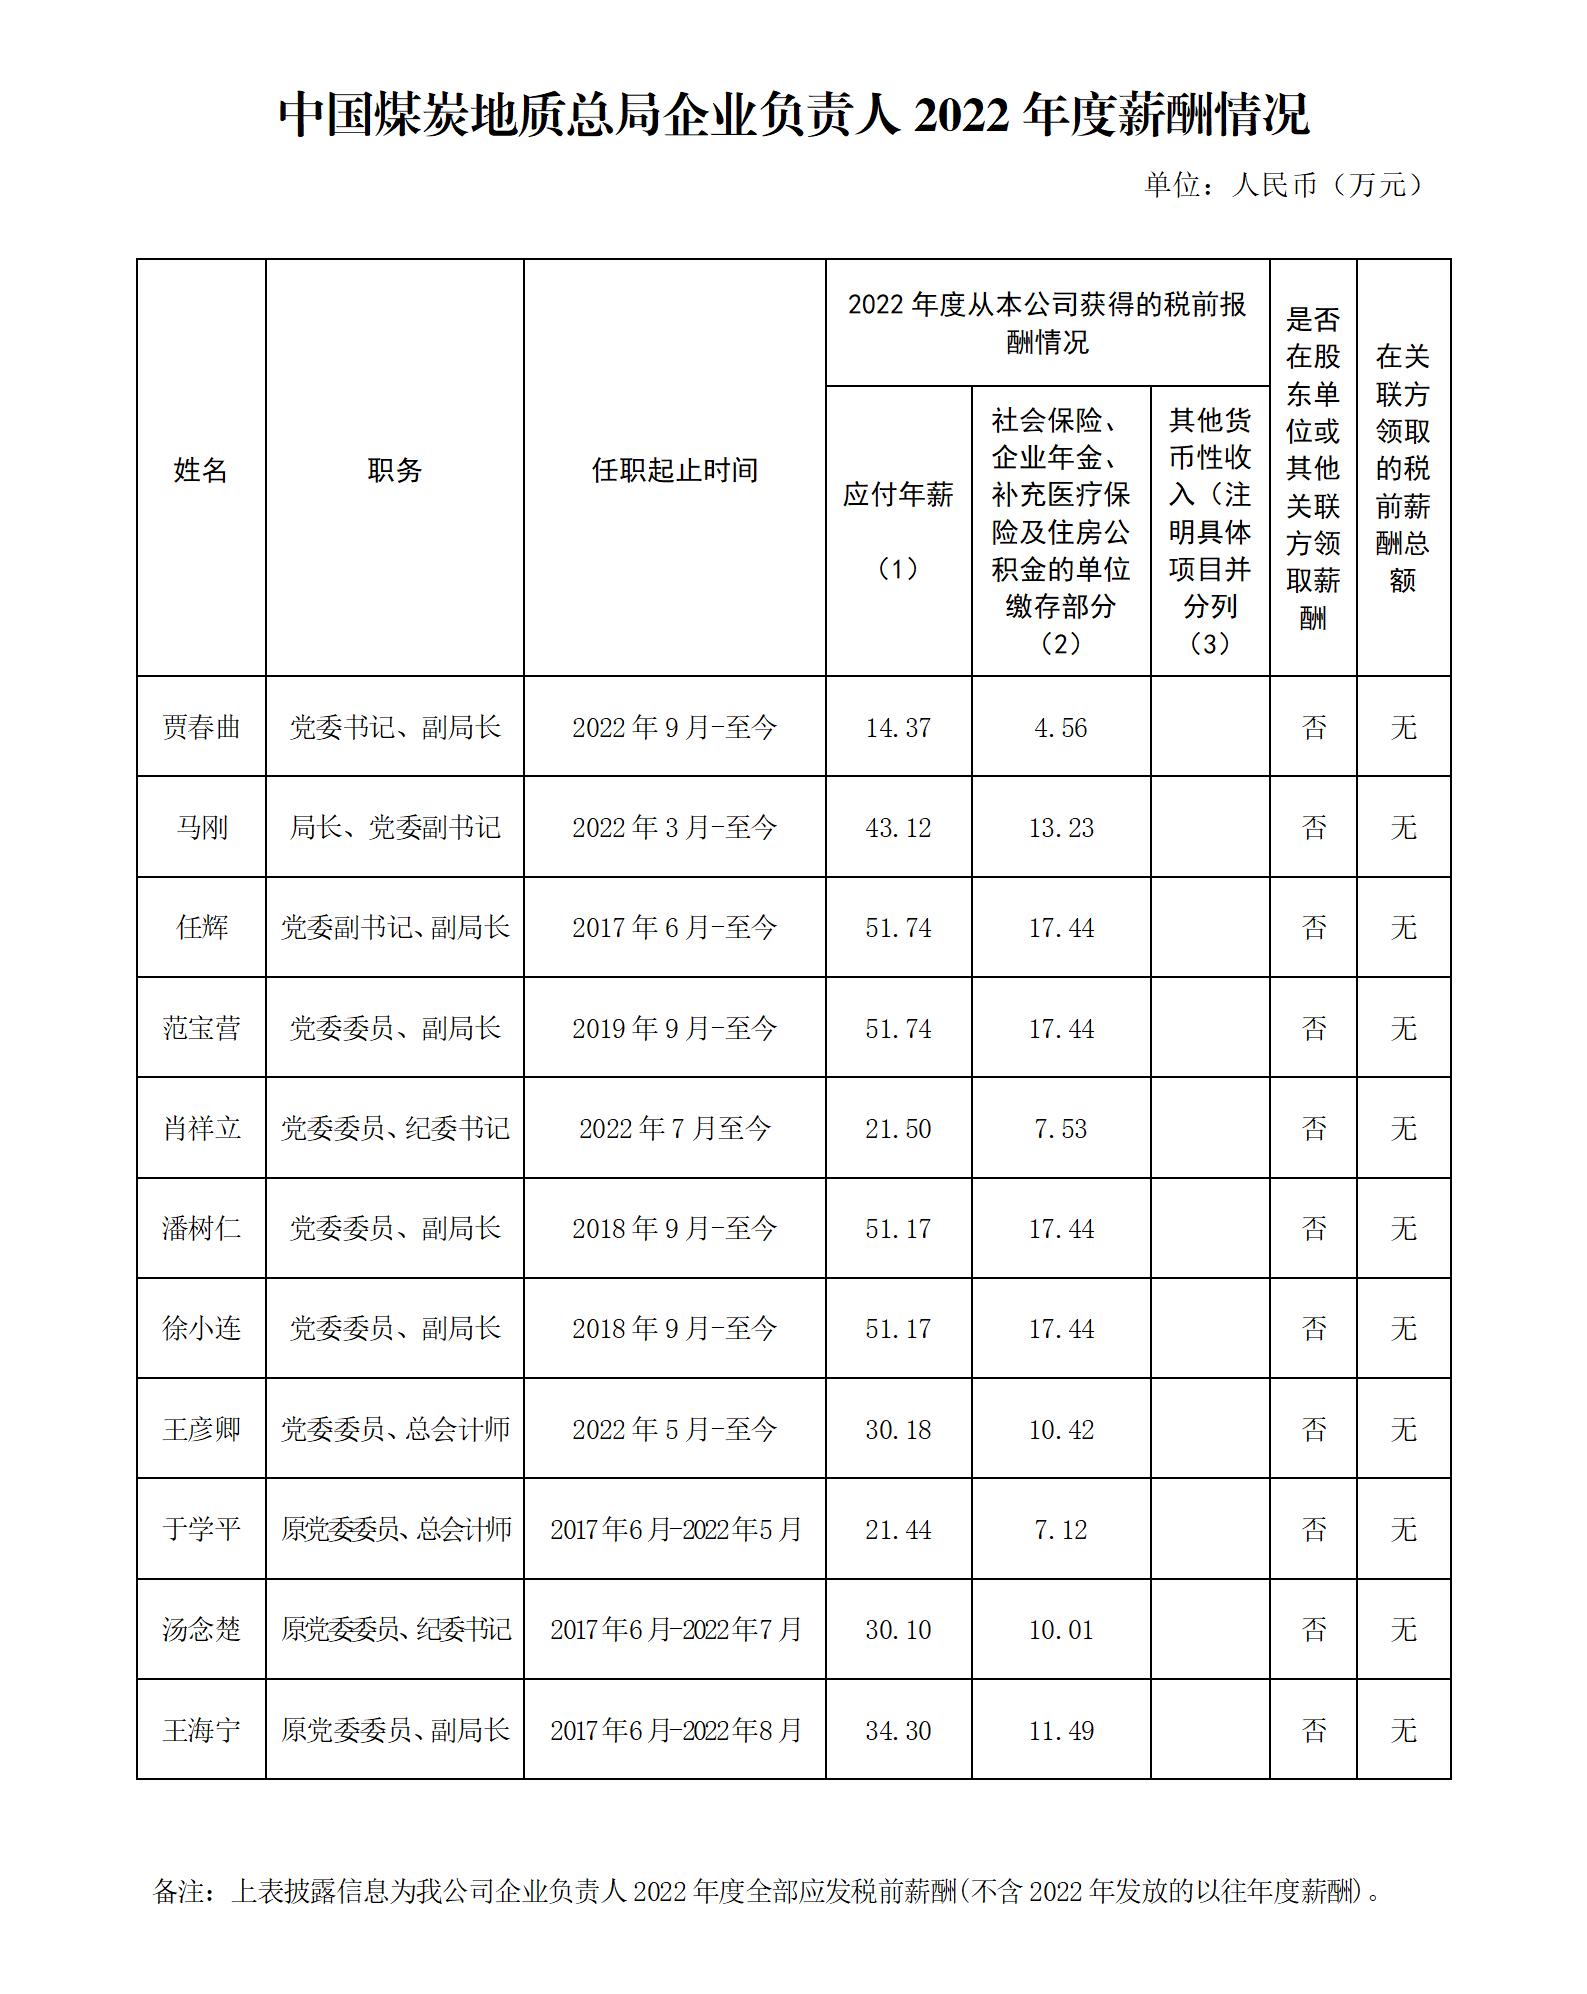 附件1：中央企业负责人年度薪酬信息披露-中国煤炭地质总局(修改)(2)_01.jpg